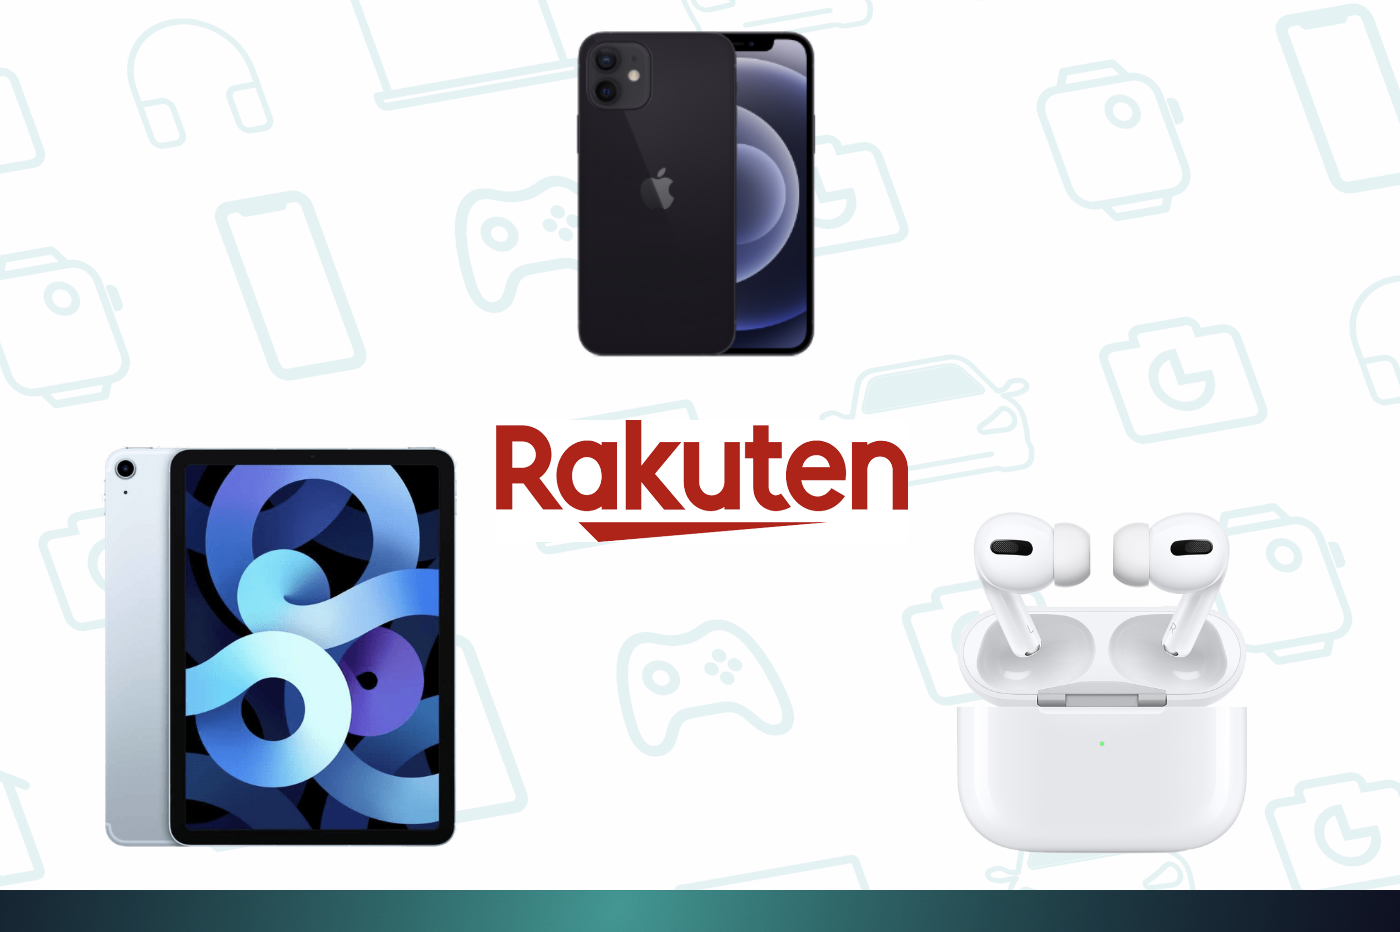 Black Friday Rakuten : iPhone 12, Airpods Pro et iPad Air en forte baisse grâce à un code promo